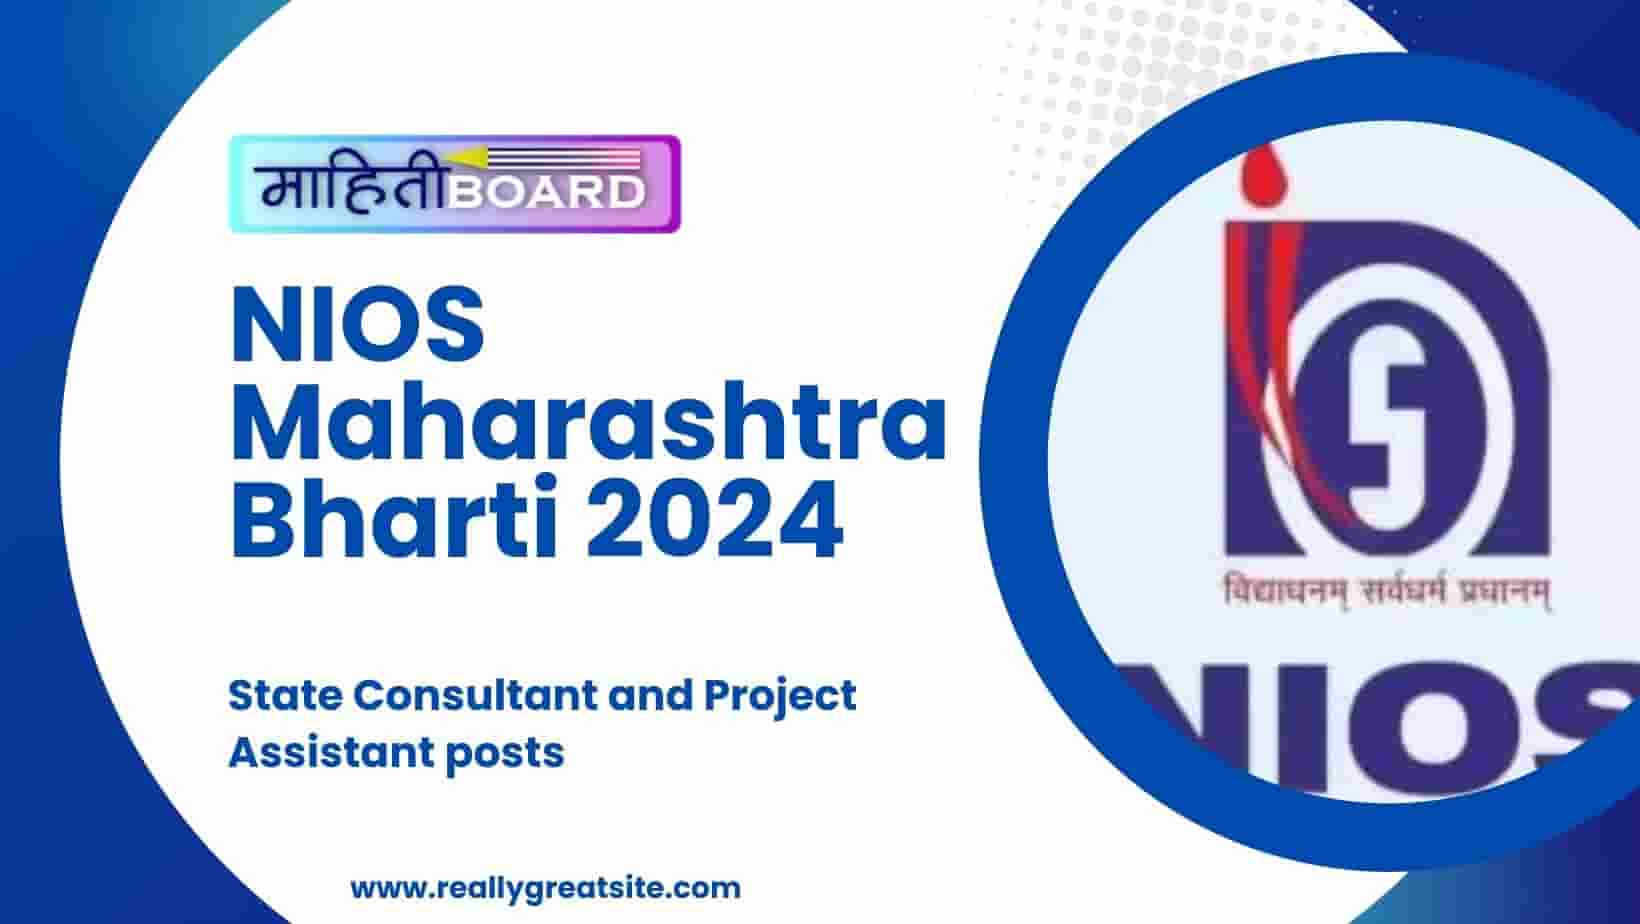 NIOS Maharashtra Bharti 2024